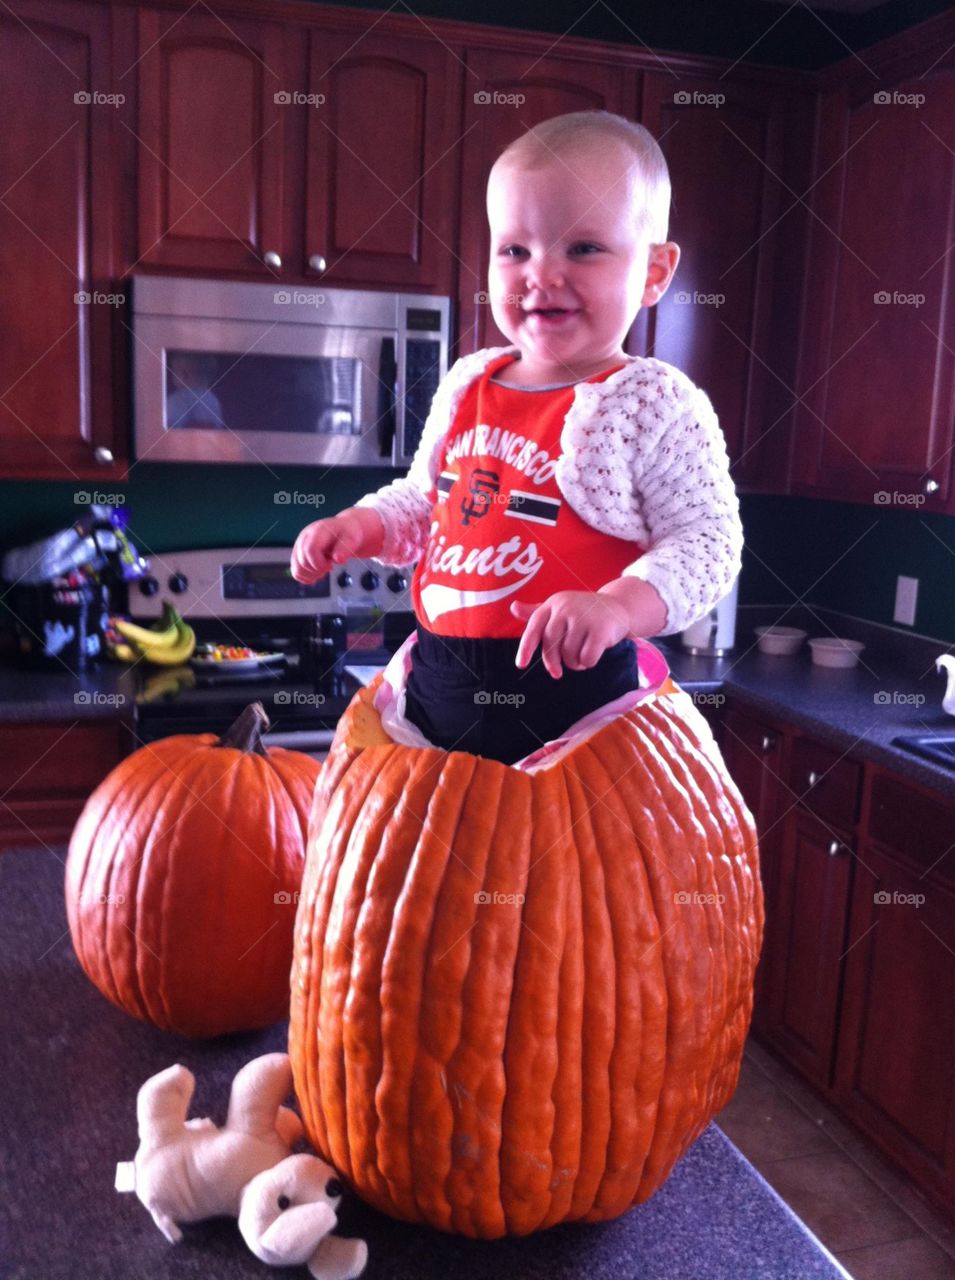 Our little pumpkin 